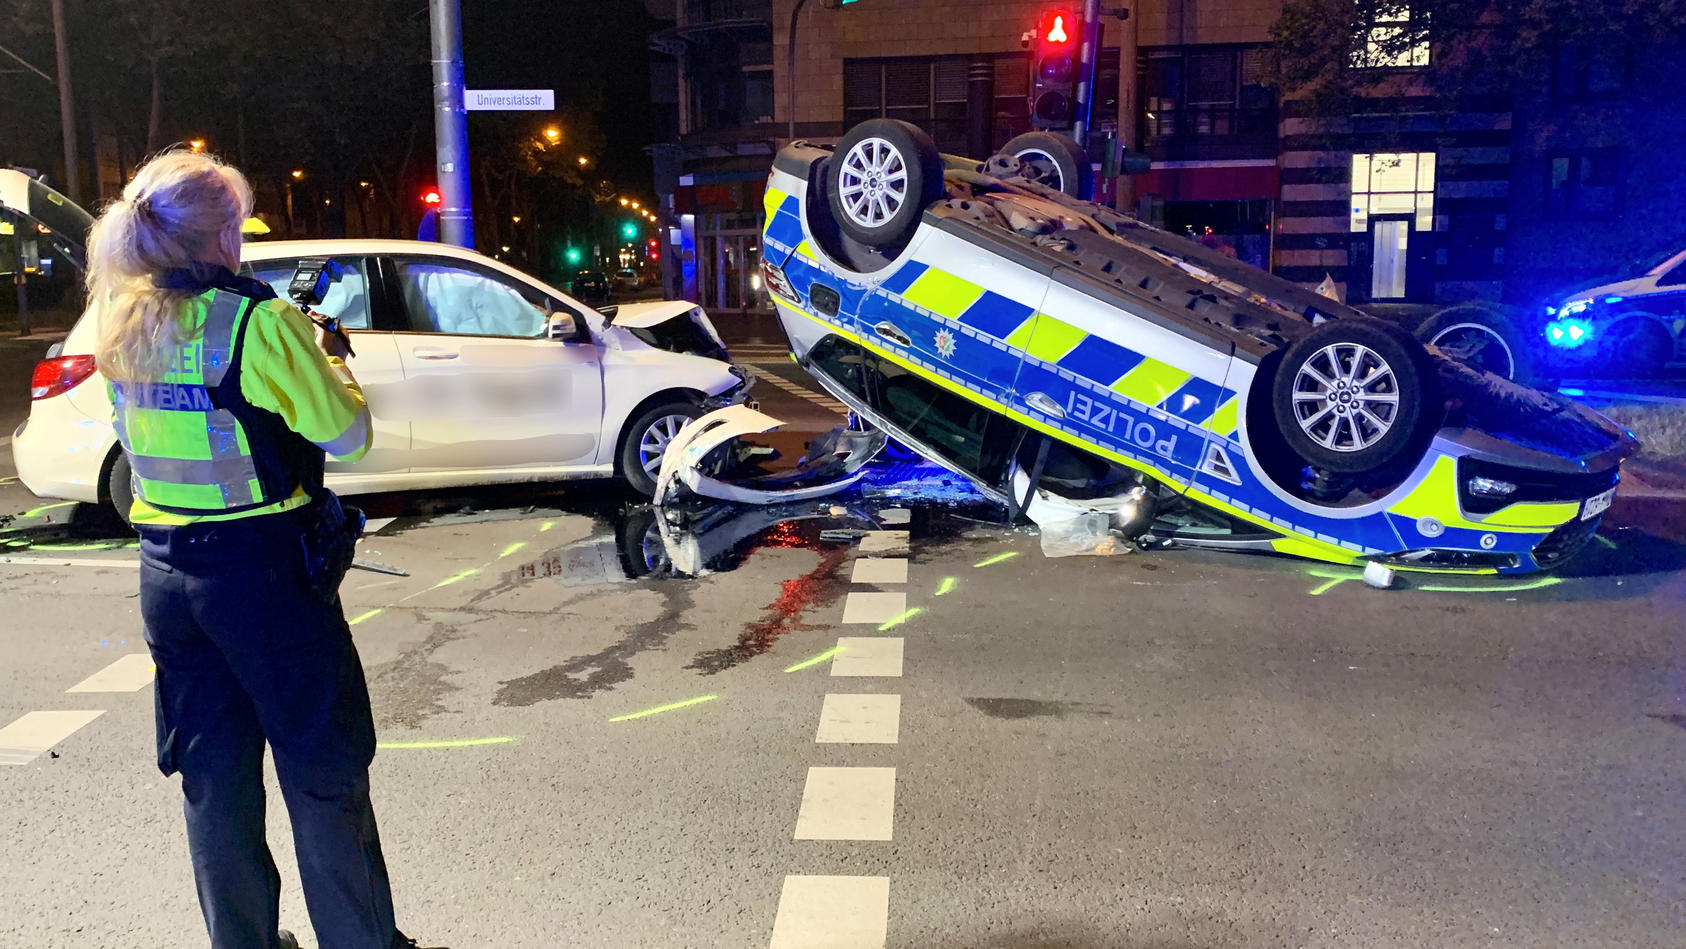 07.05.2022, Nordrhein-Westfalen, Köln: Eine polizistin betrachtet die Unfallstelle. Auf dem Weg zu einem Einsatz ist ein Streifenwagen in Köln in der Nacht auf Samstag mit einem Taxi kollidiert  - dabei sind sechs Menschen verletzt worden. Wie ein Sp